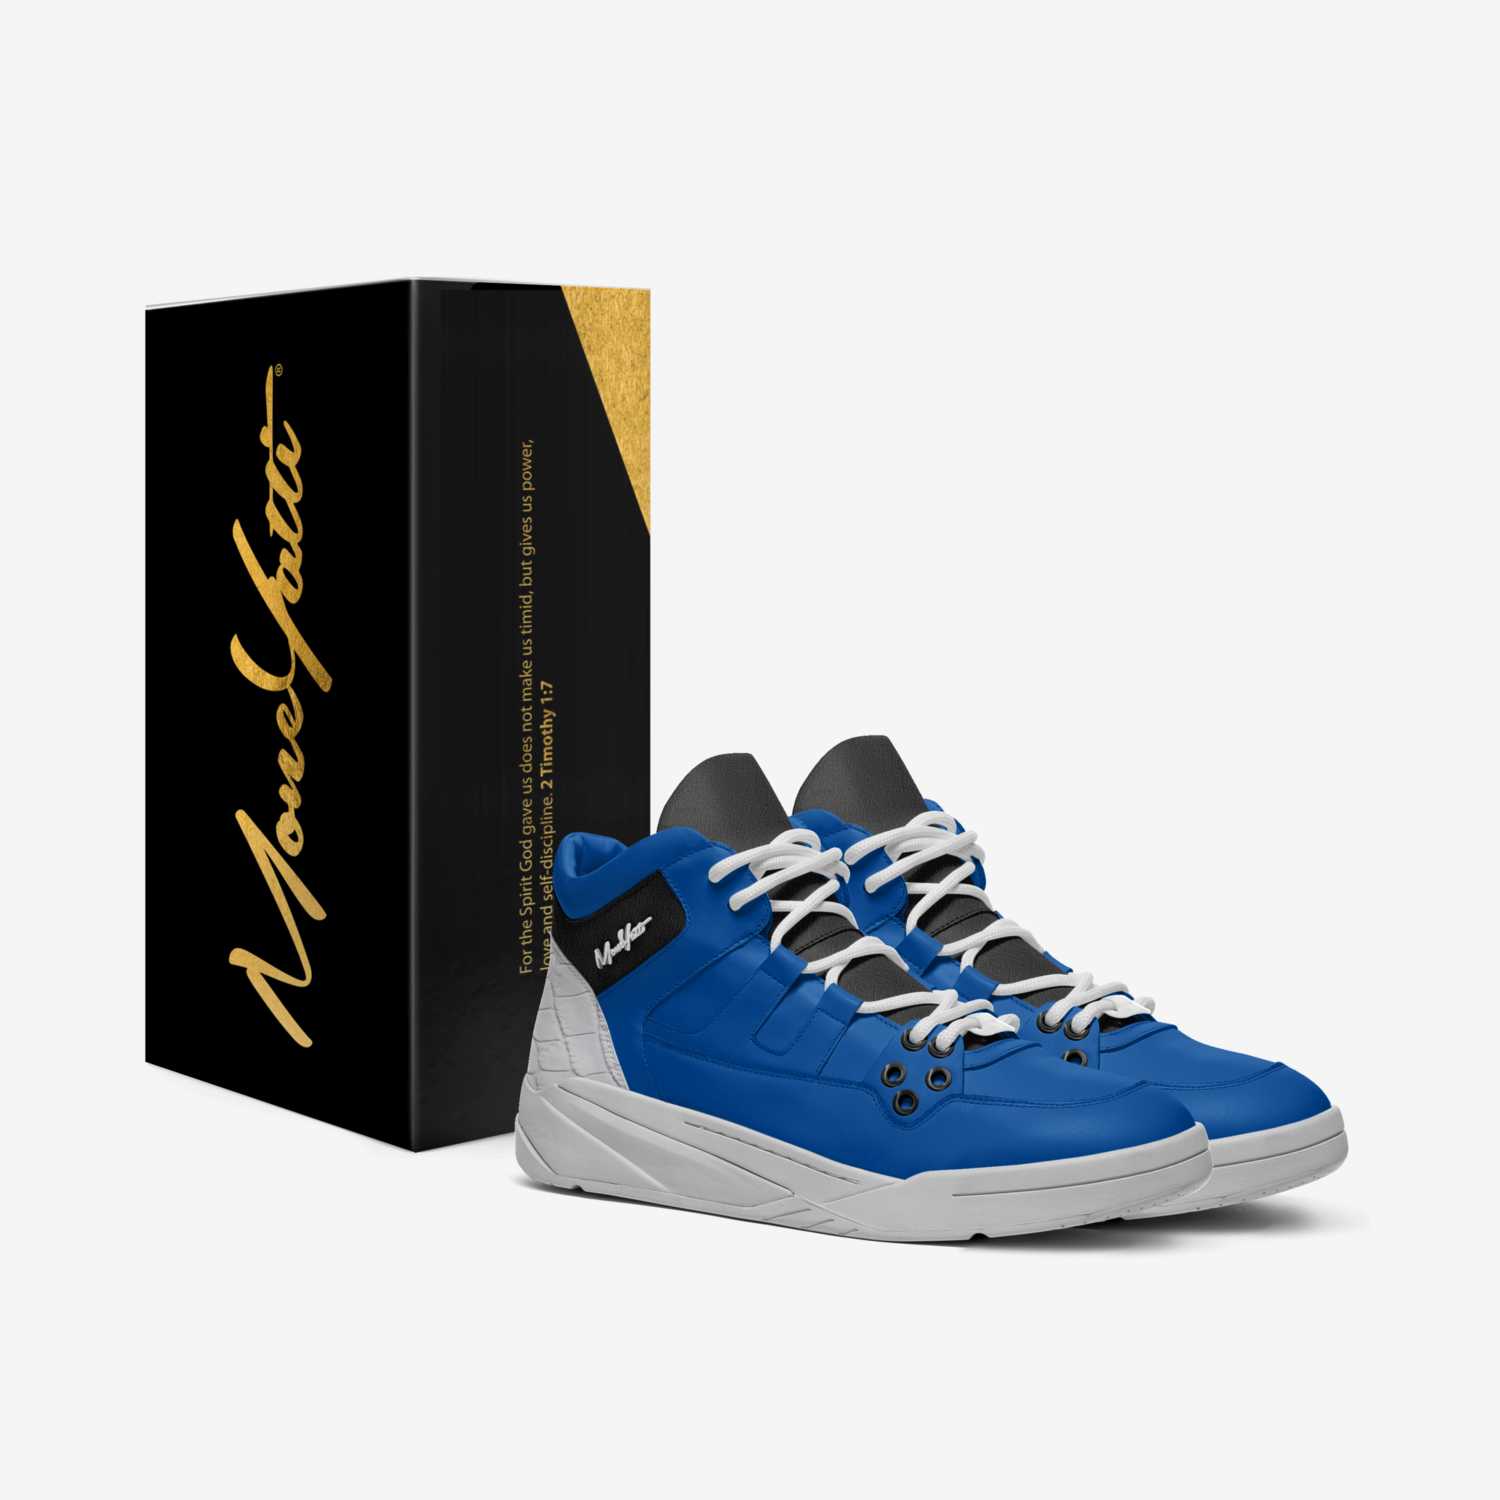 MONEYATTI DRIFT 003 custom made in Italy shoes by Moneyatti Brand | Box view